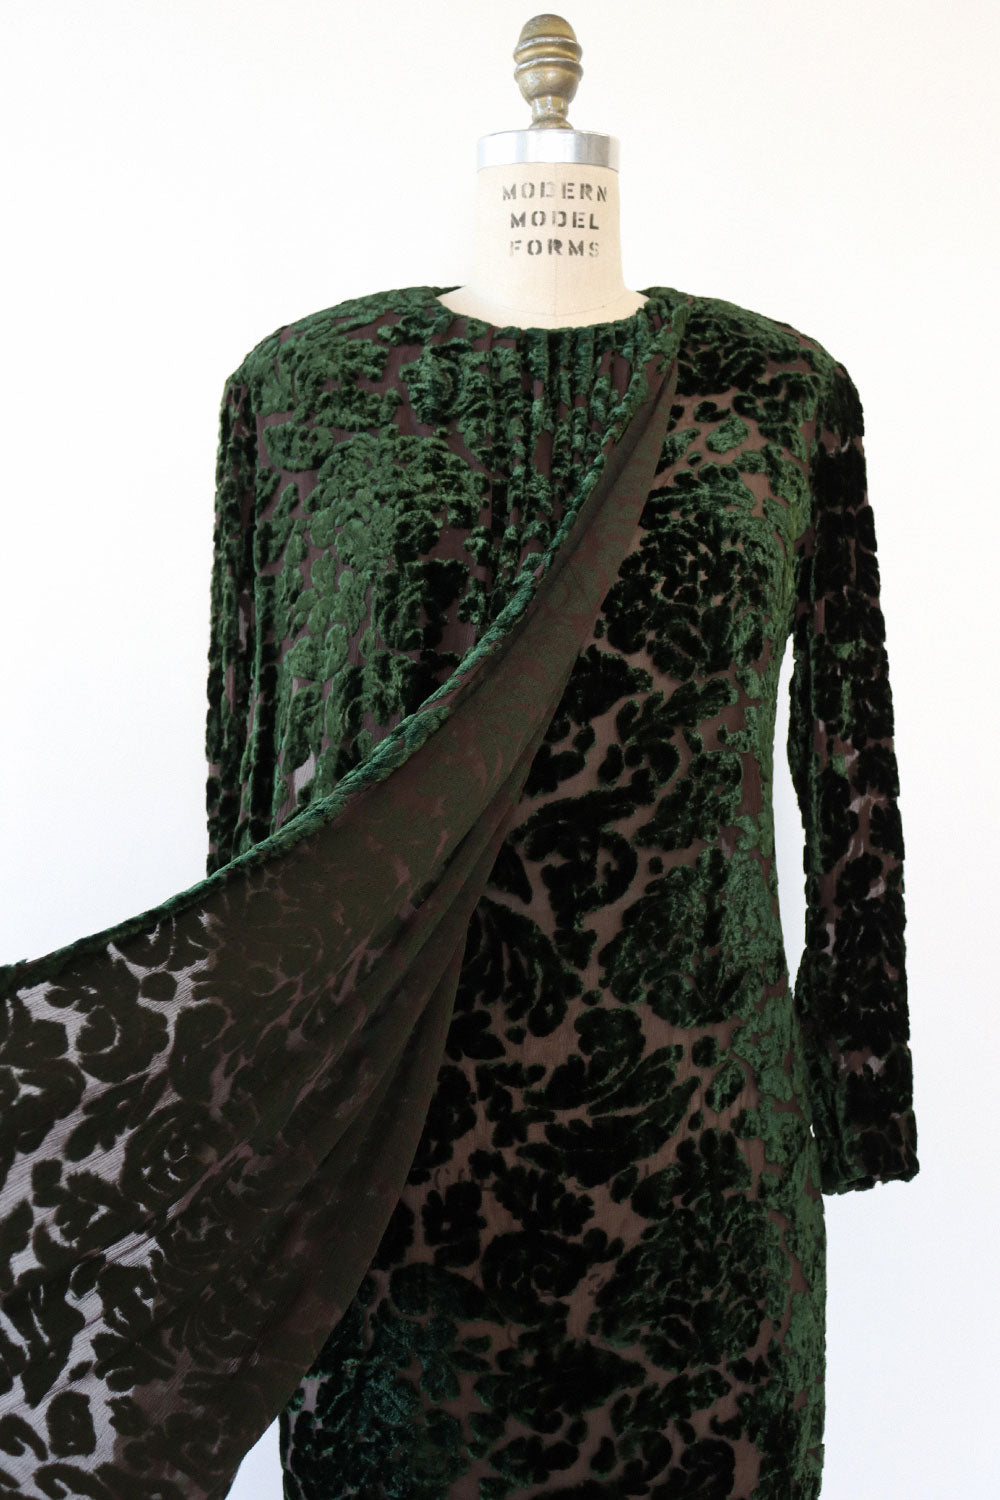 Anne Klein Ivy Velvet Burnout Dress XS/S